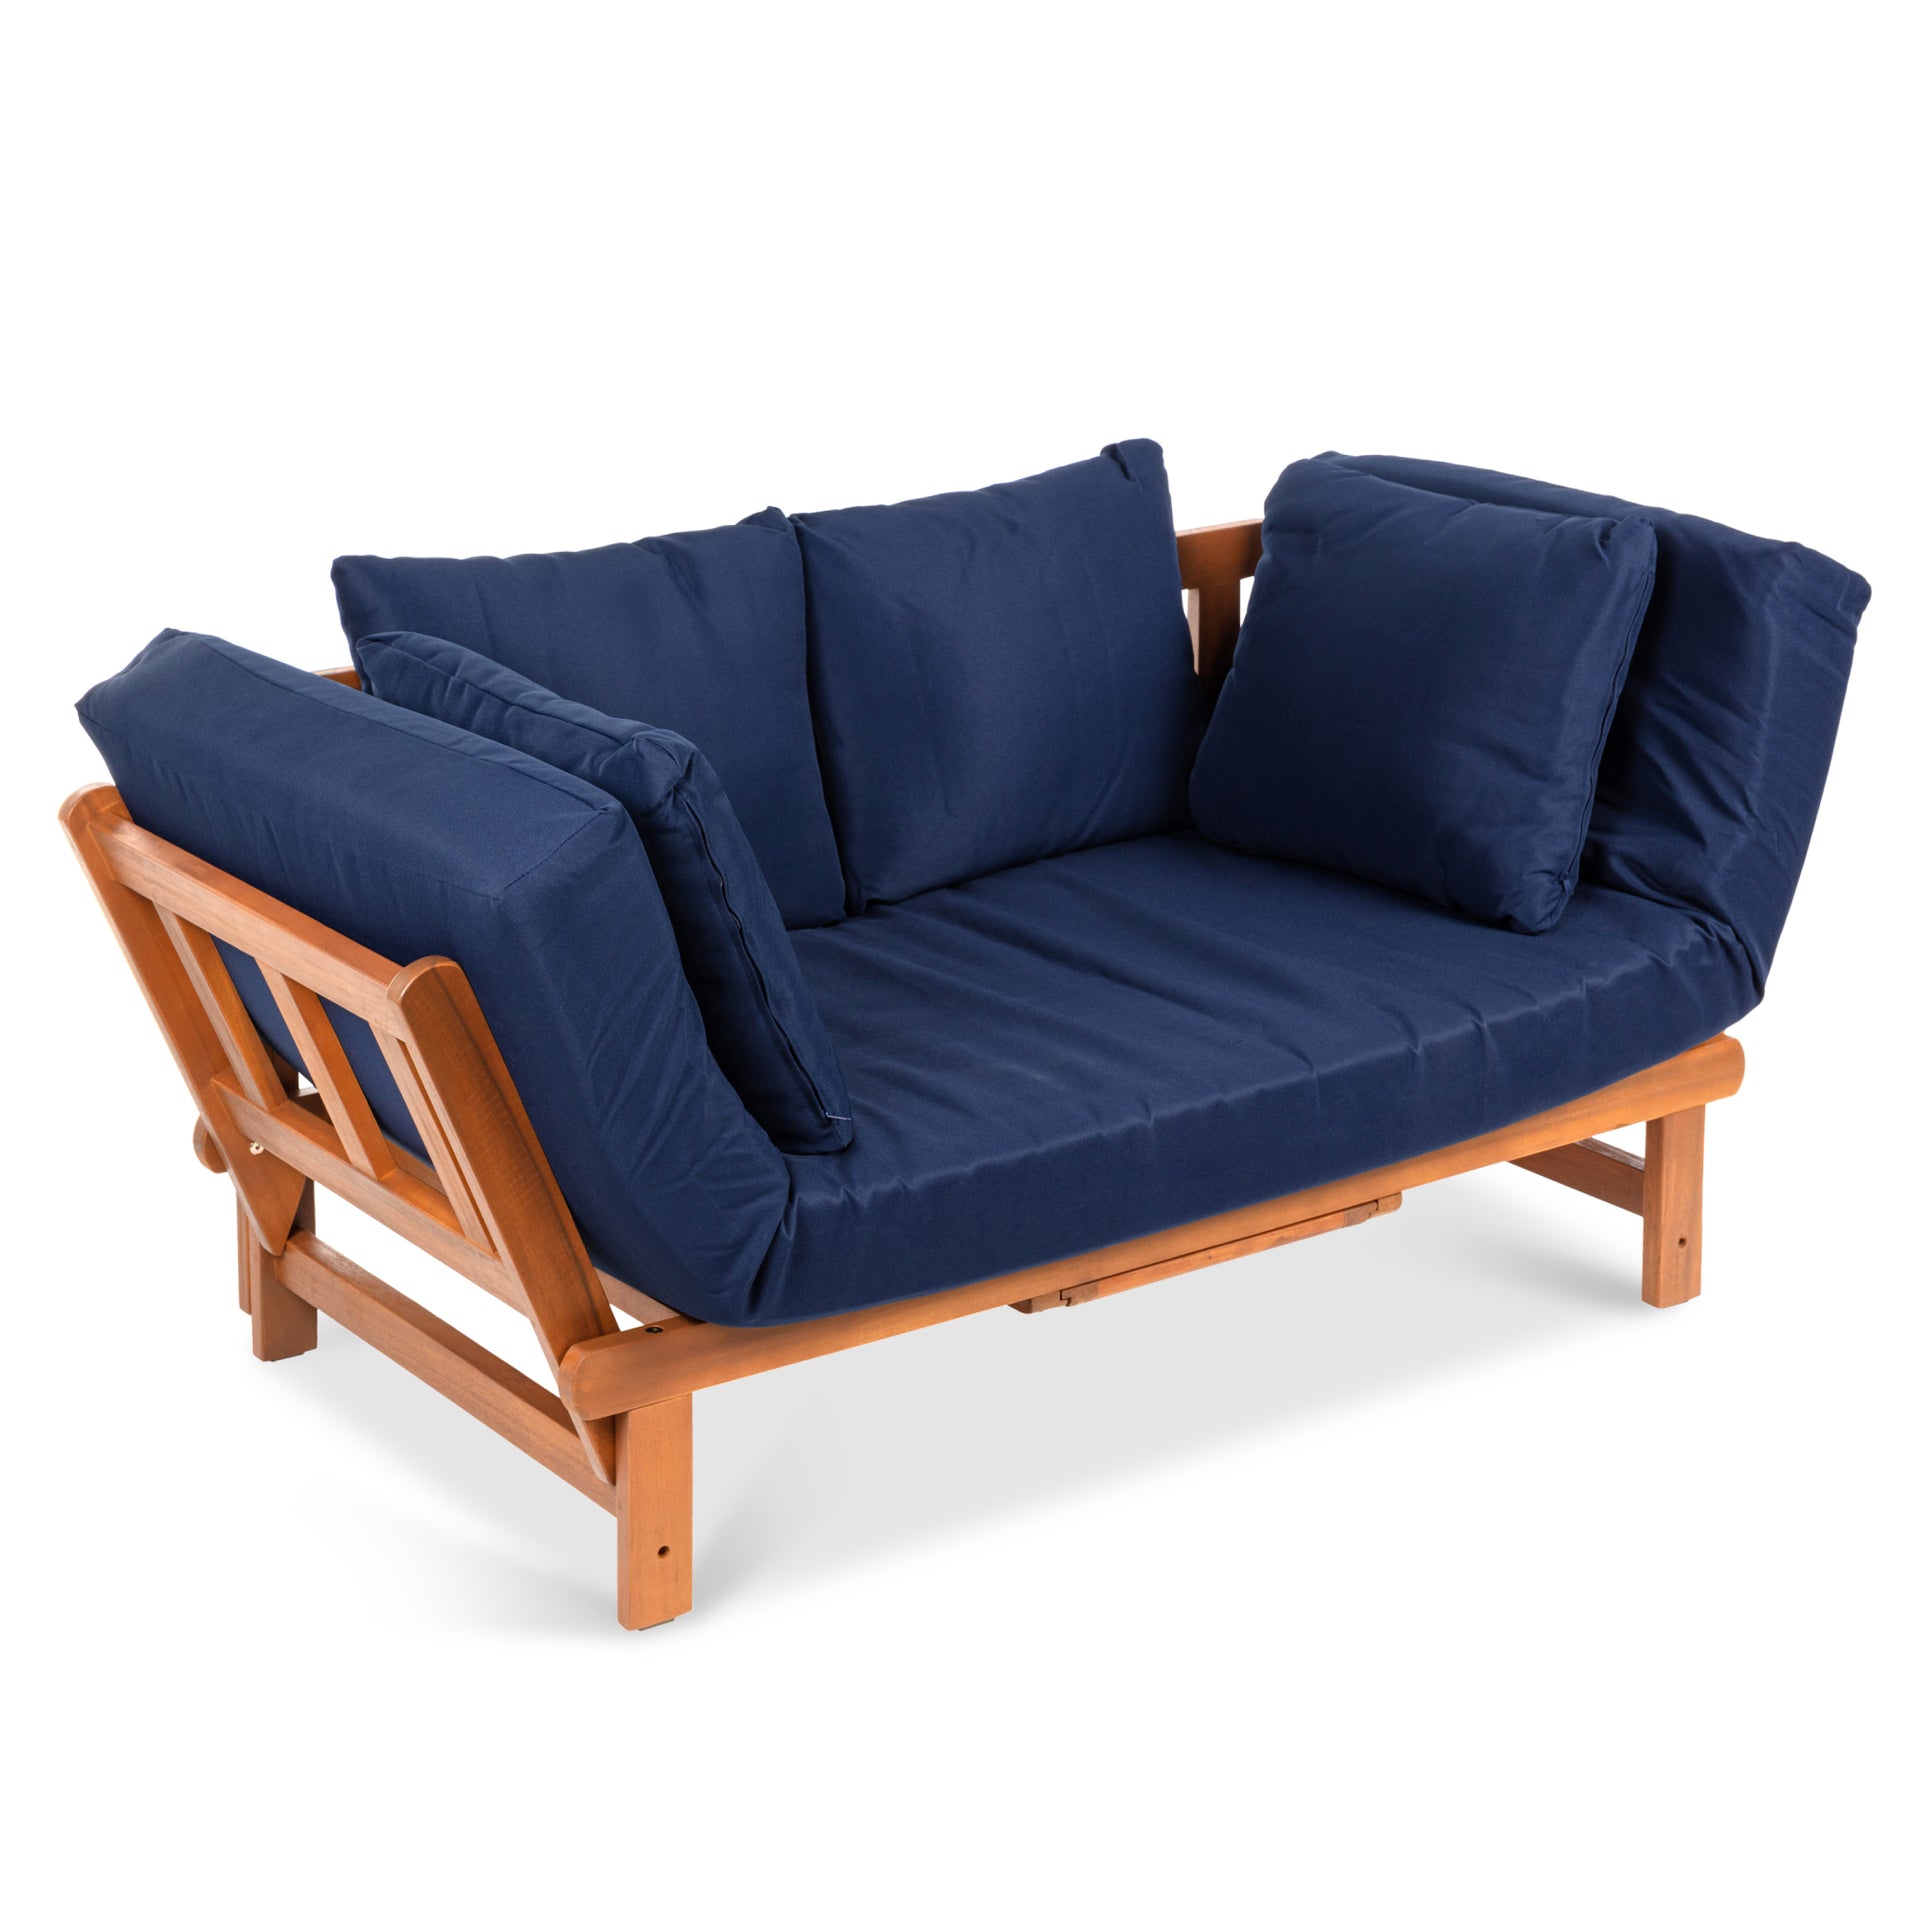 Qué es un futón? 4 beneficios de tener uno